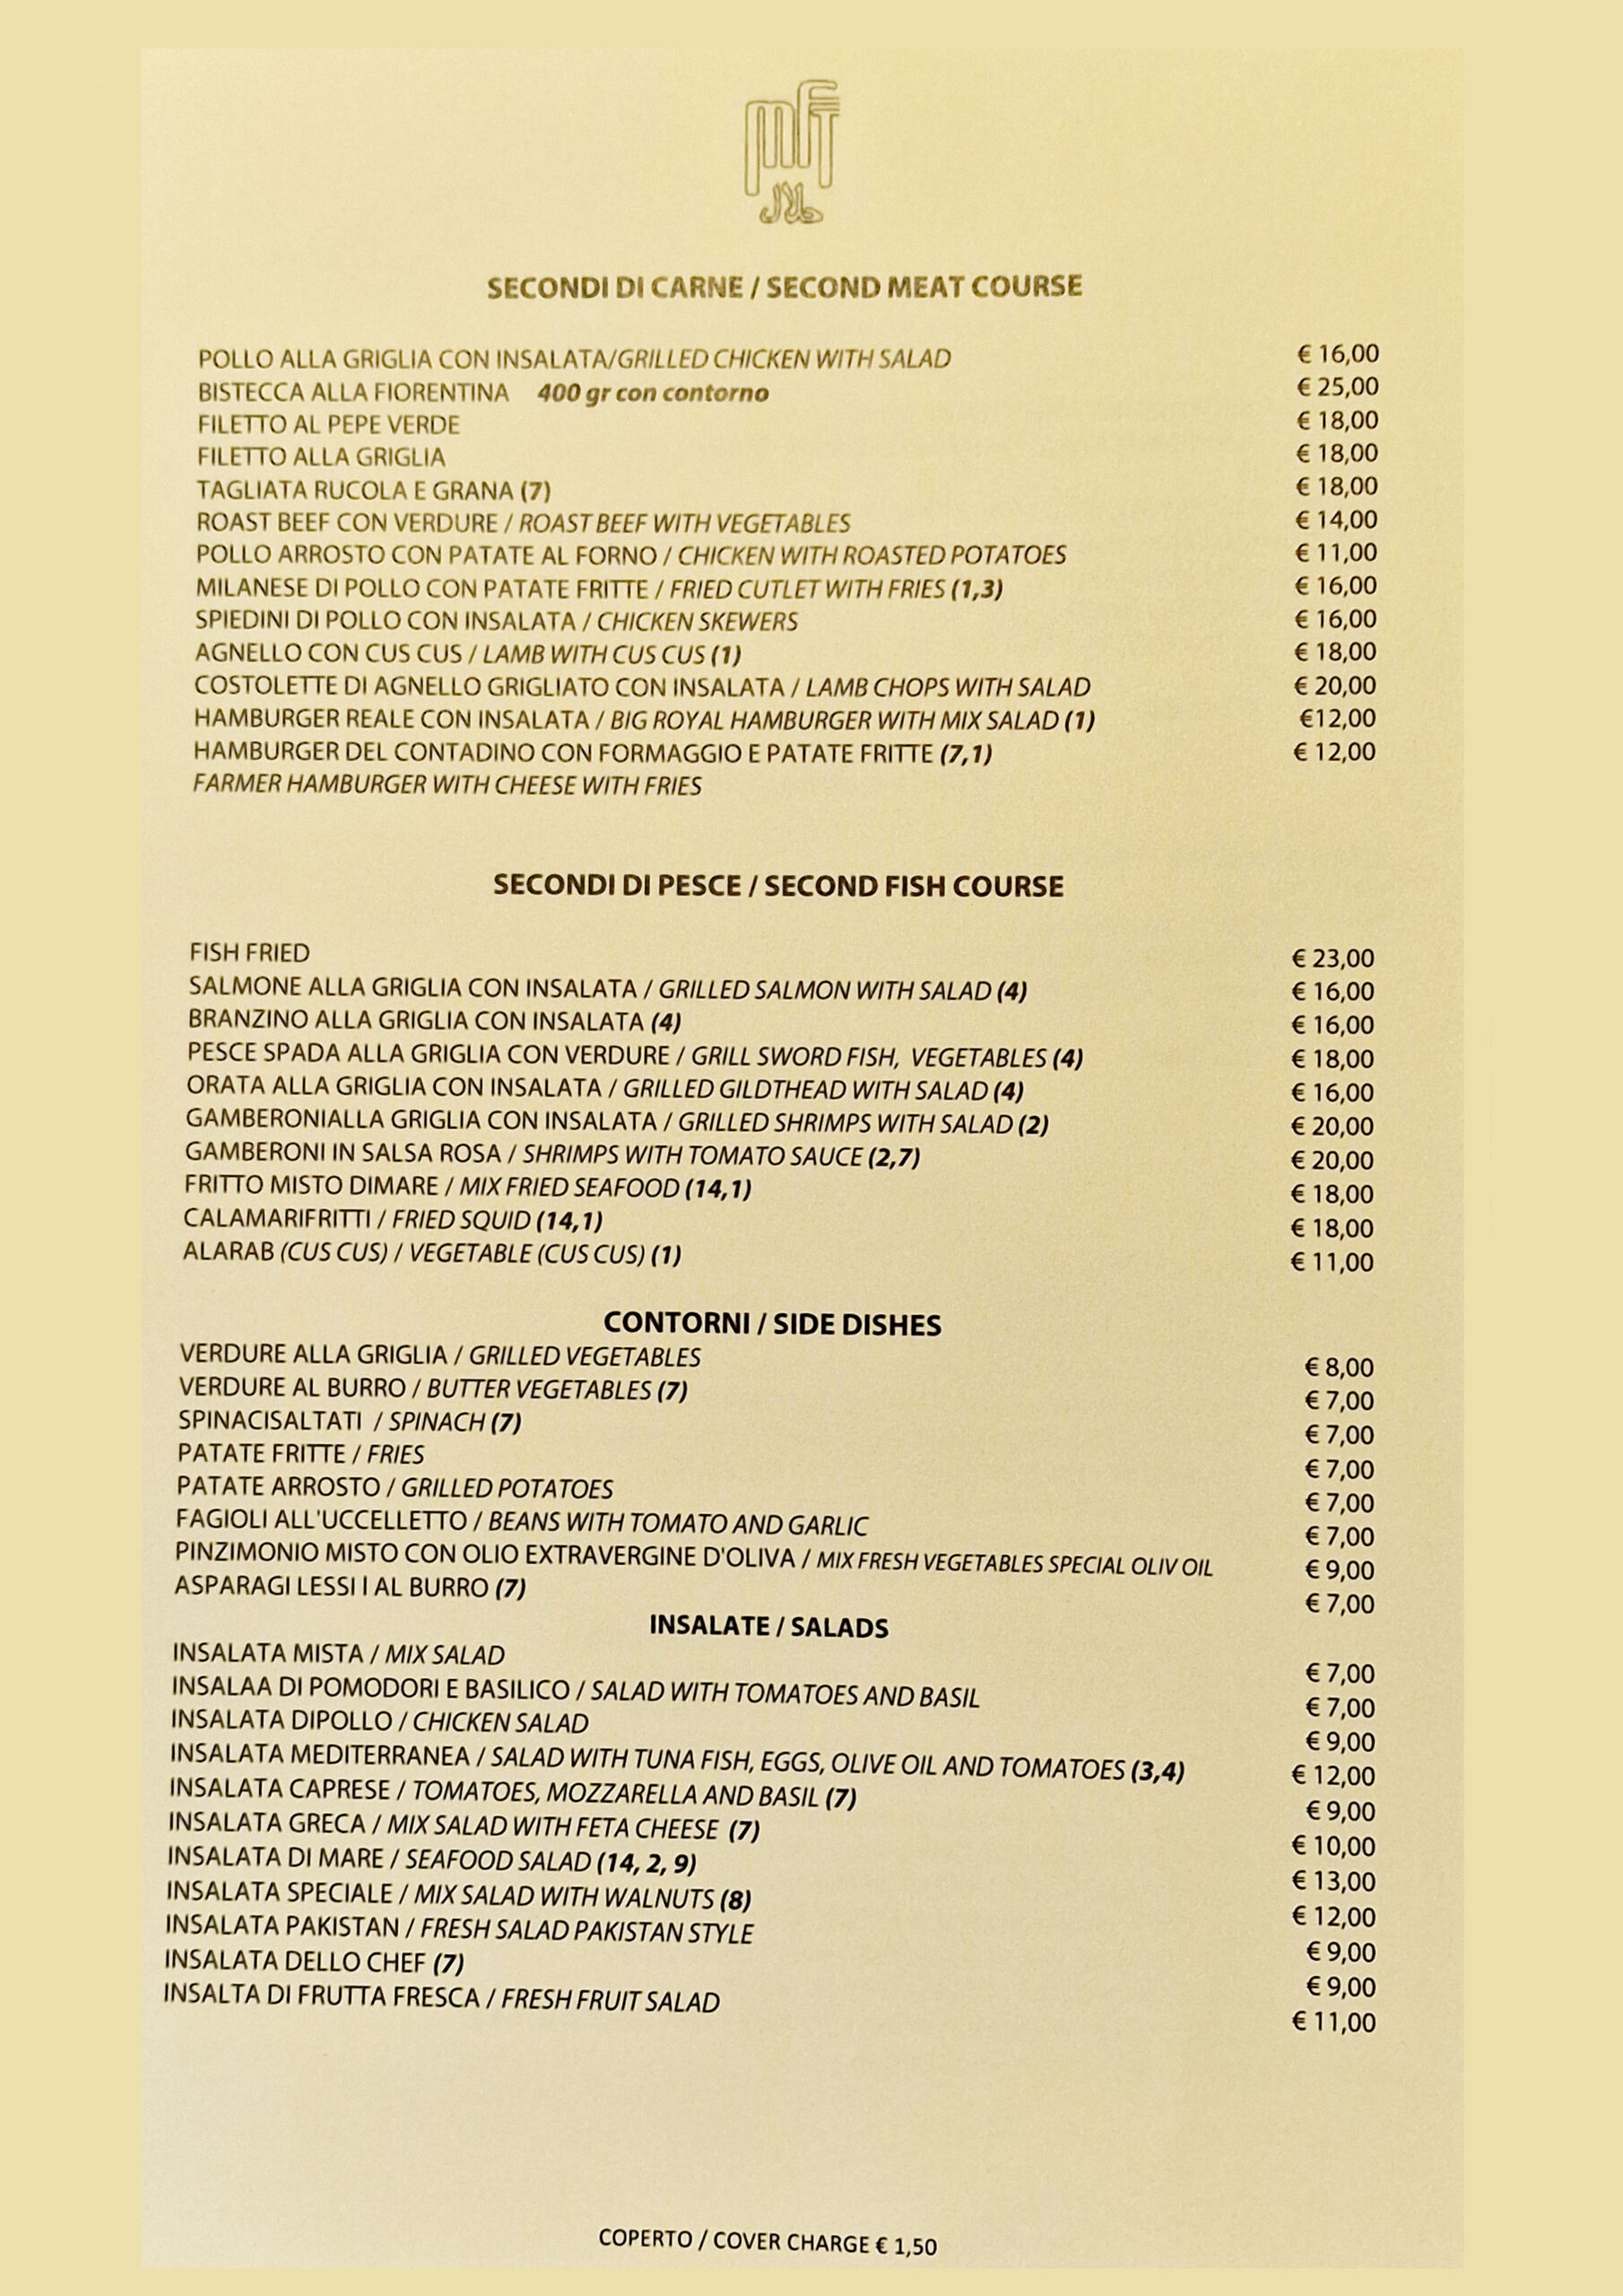 maddina florence tandoori restaurant menu